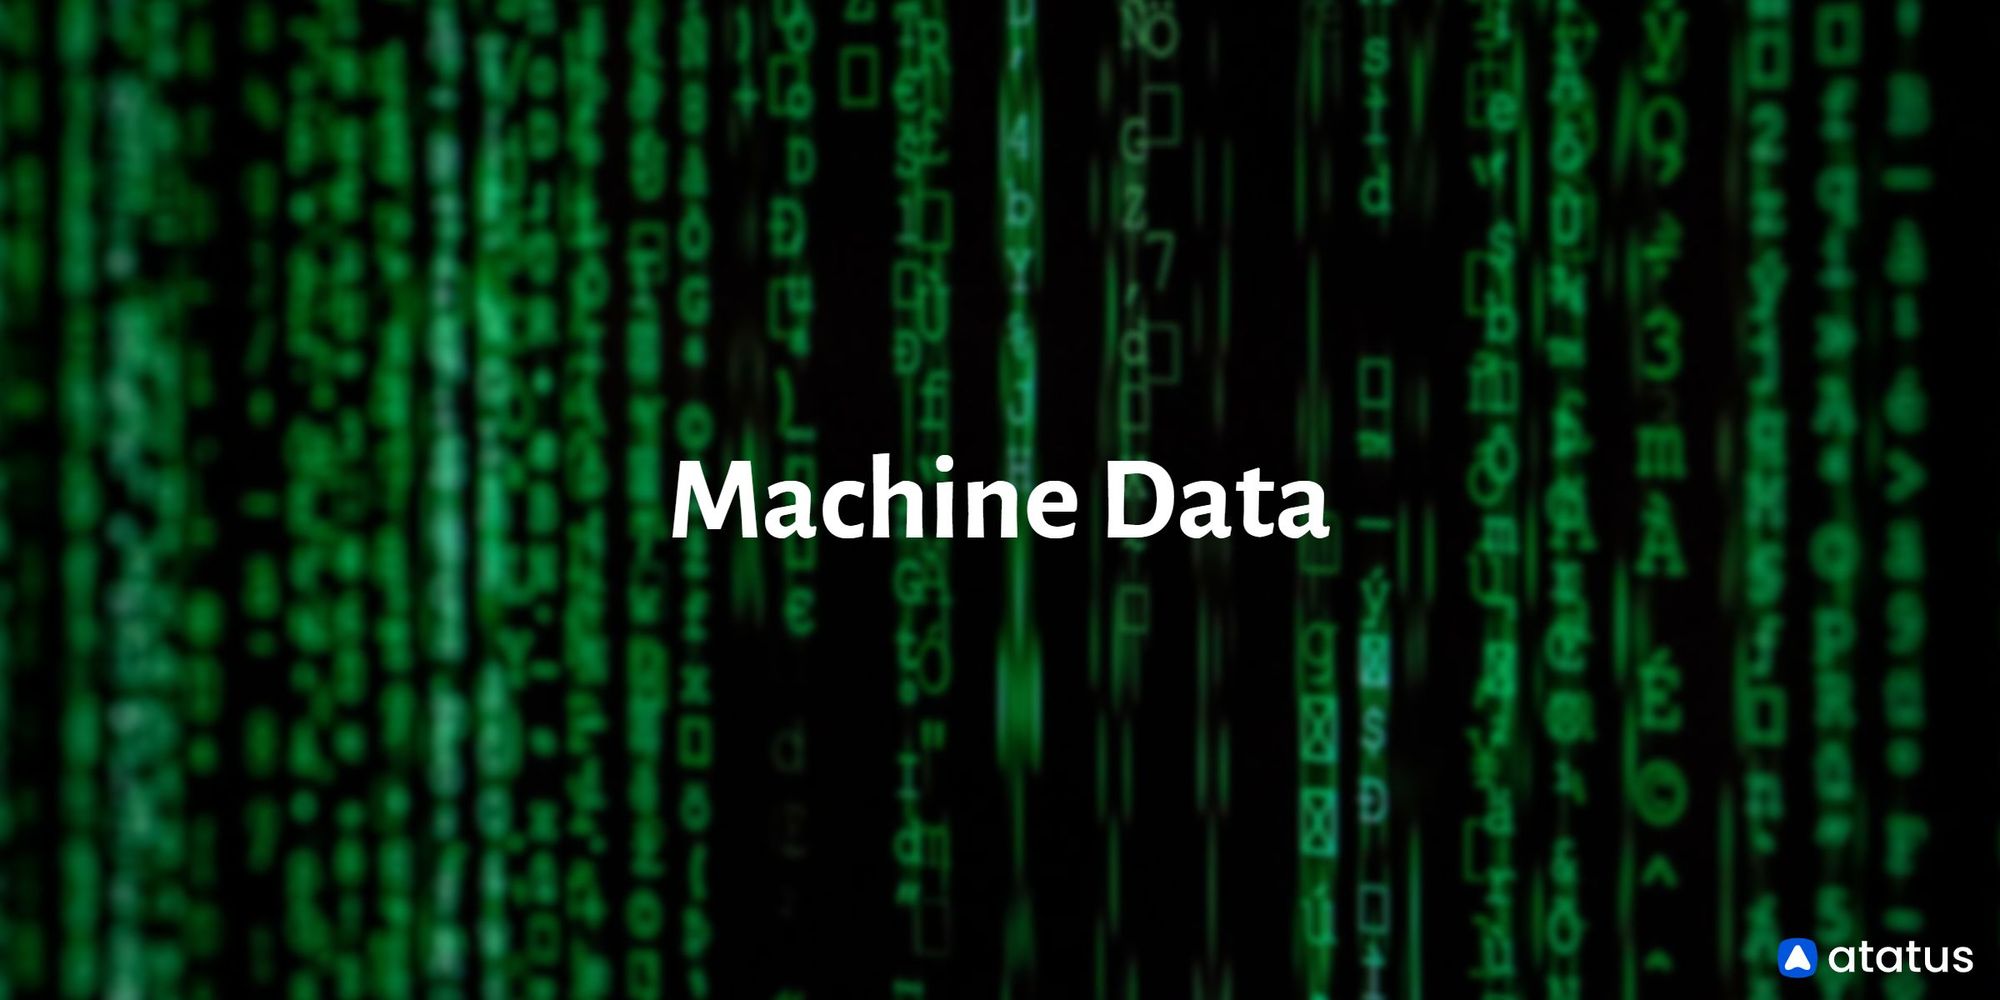 Machine data